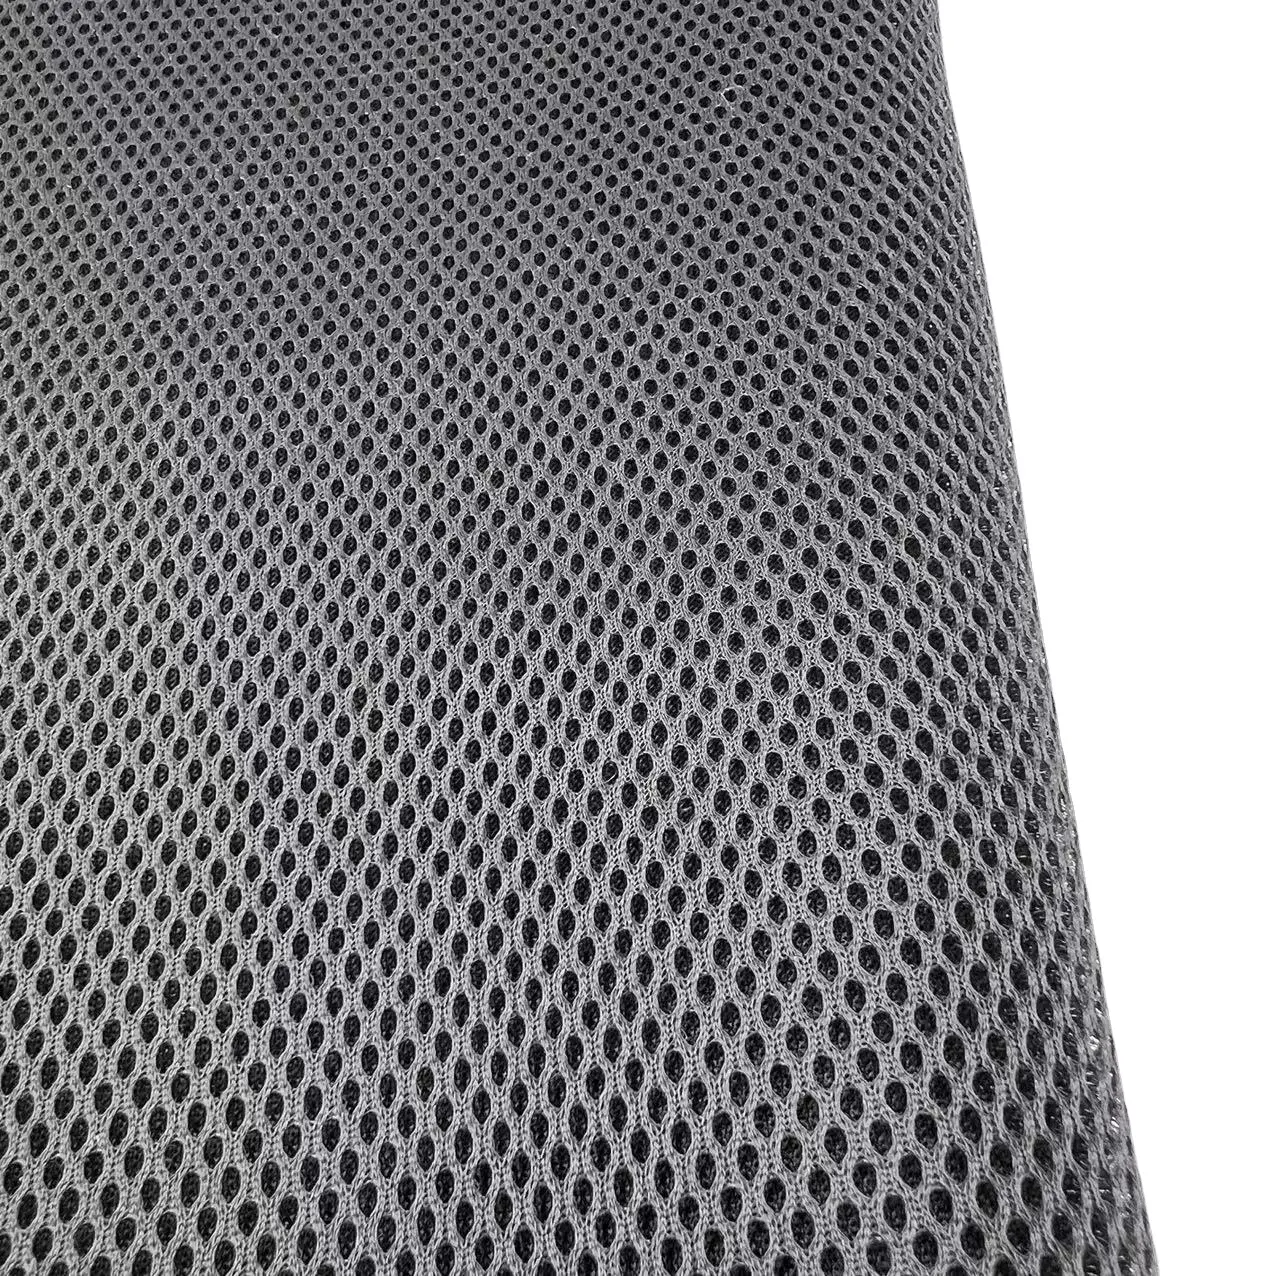 Yi-premium — oreiller de bain de luxe en polyester, tissu 3D, à mailles d'air, de couleur noir, avec ventouses